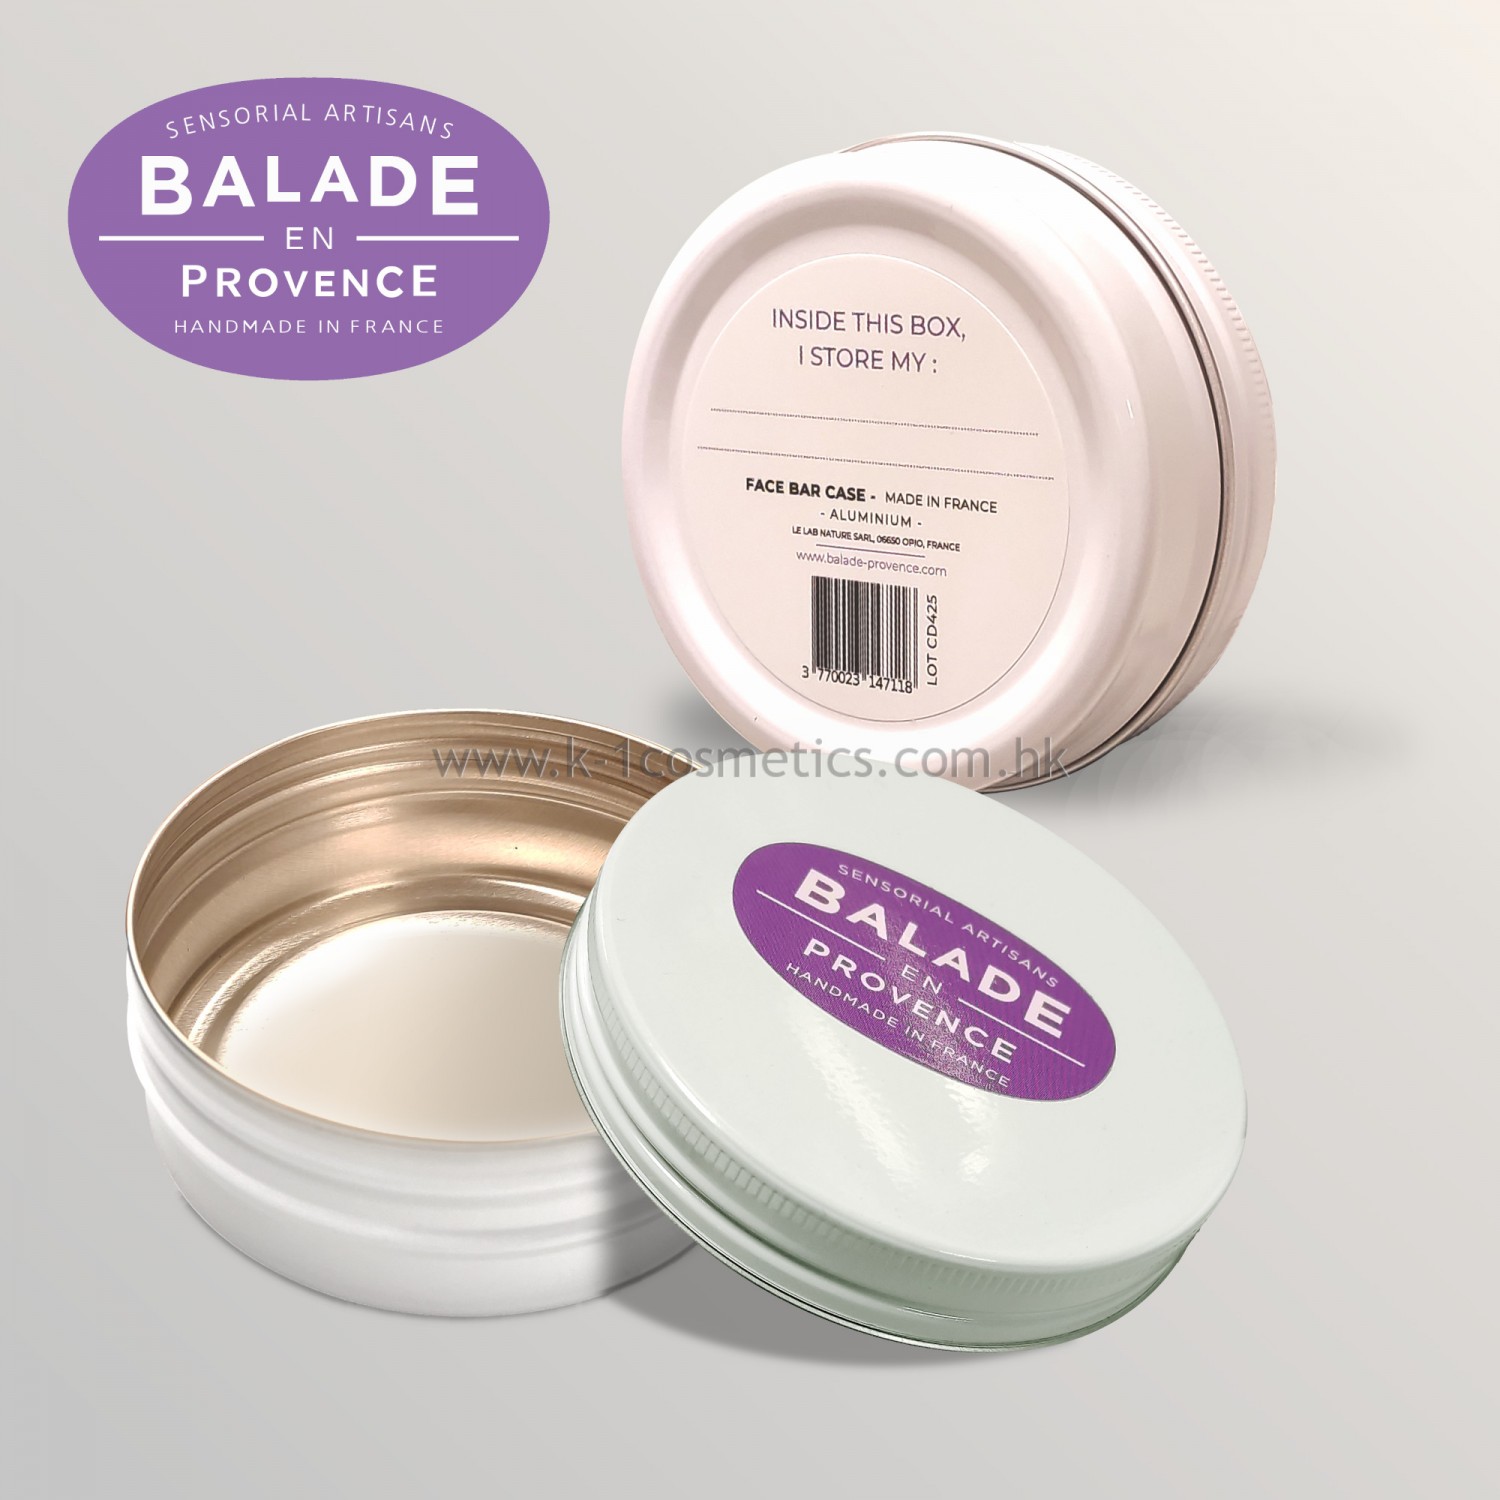 Balade en Provence 鋁質收納盒